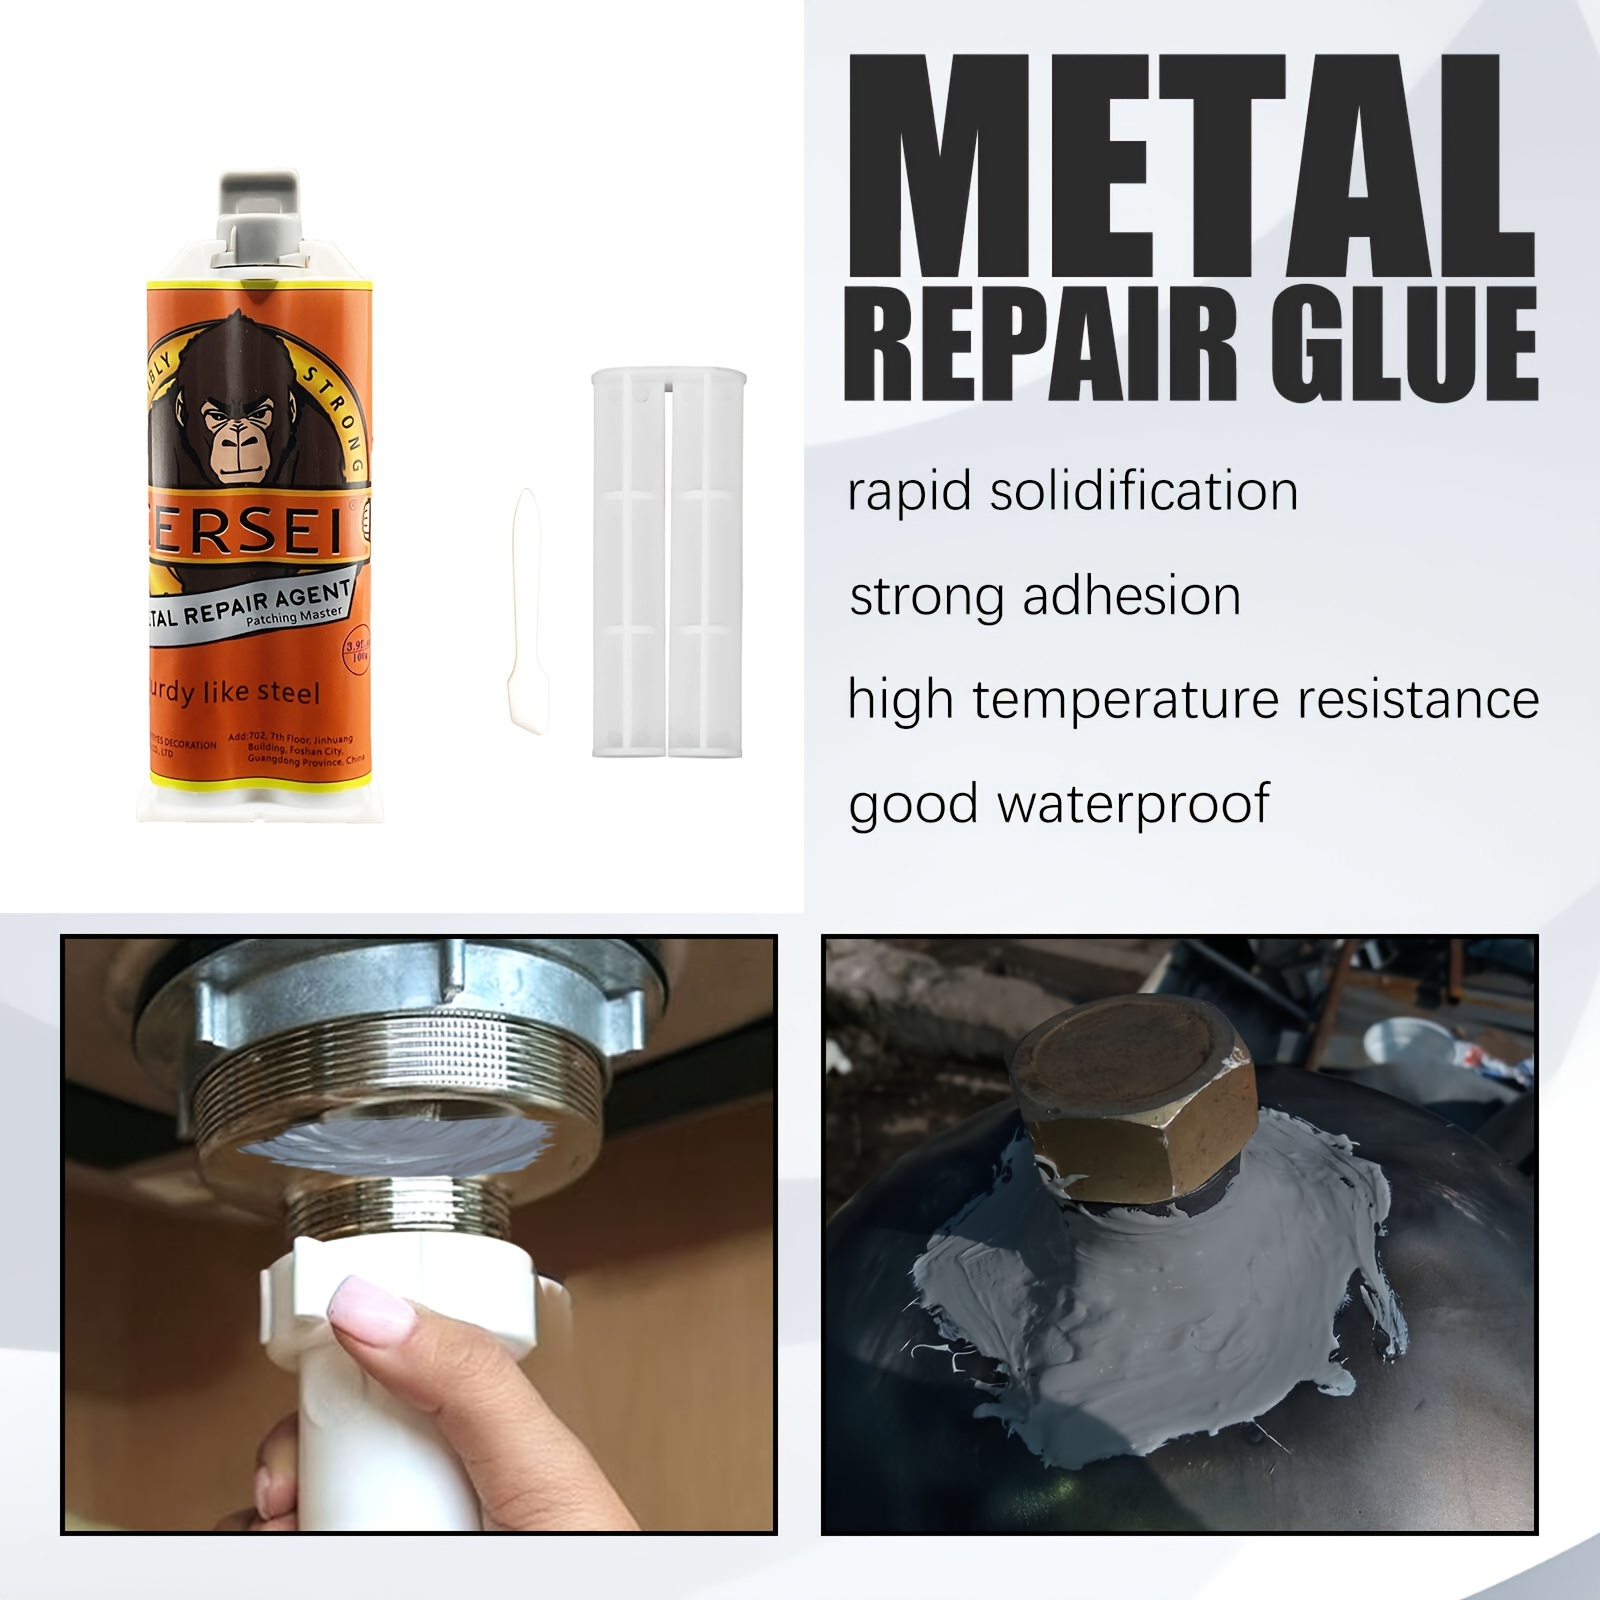 High Temperature Resistant Ab Cast Glue Industrial Repair - Temu